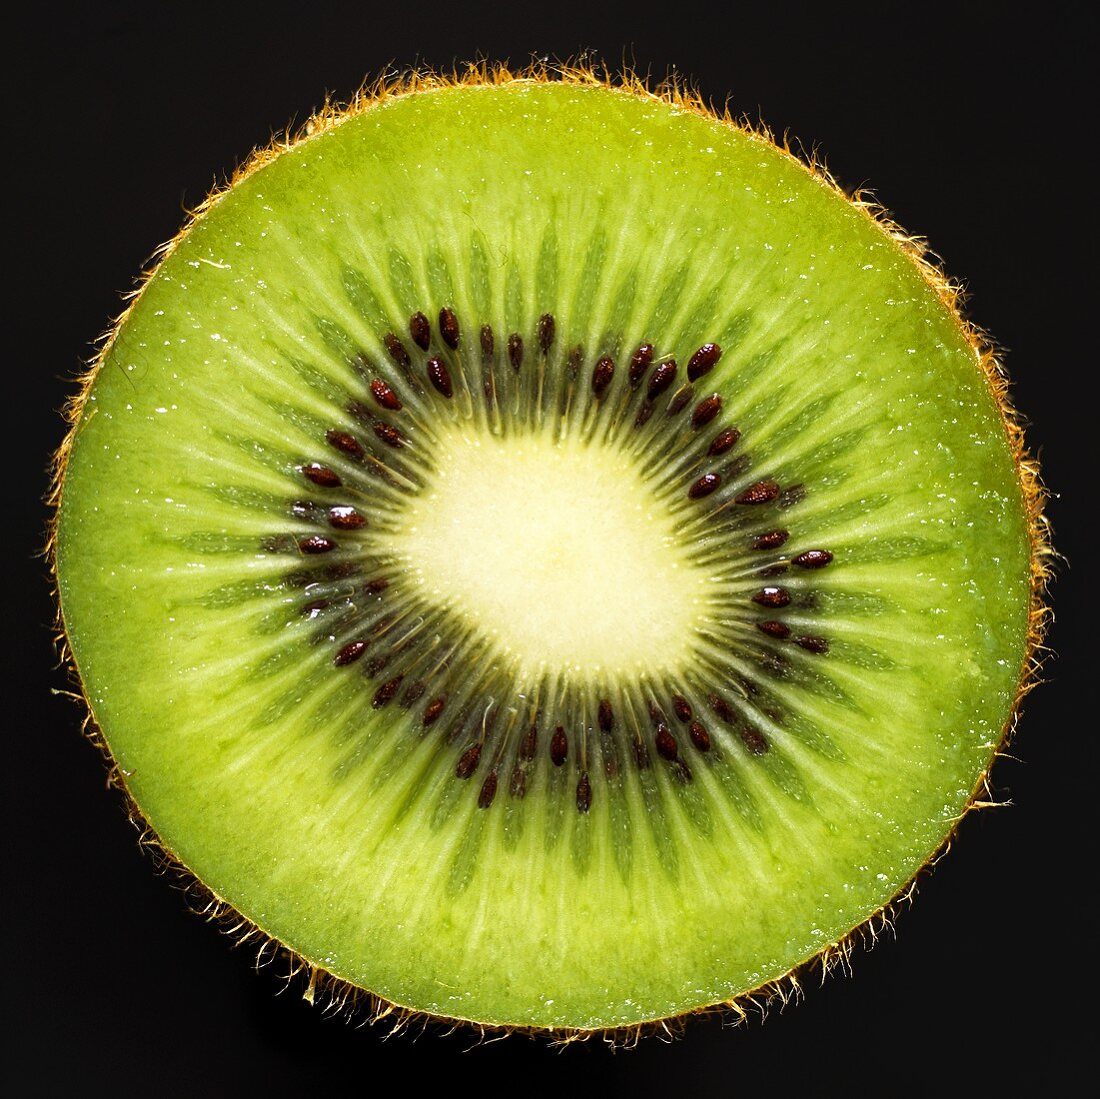 Half a kiwi fruit (close-up)